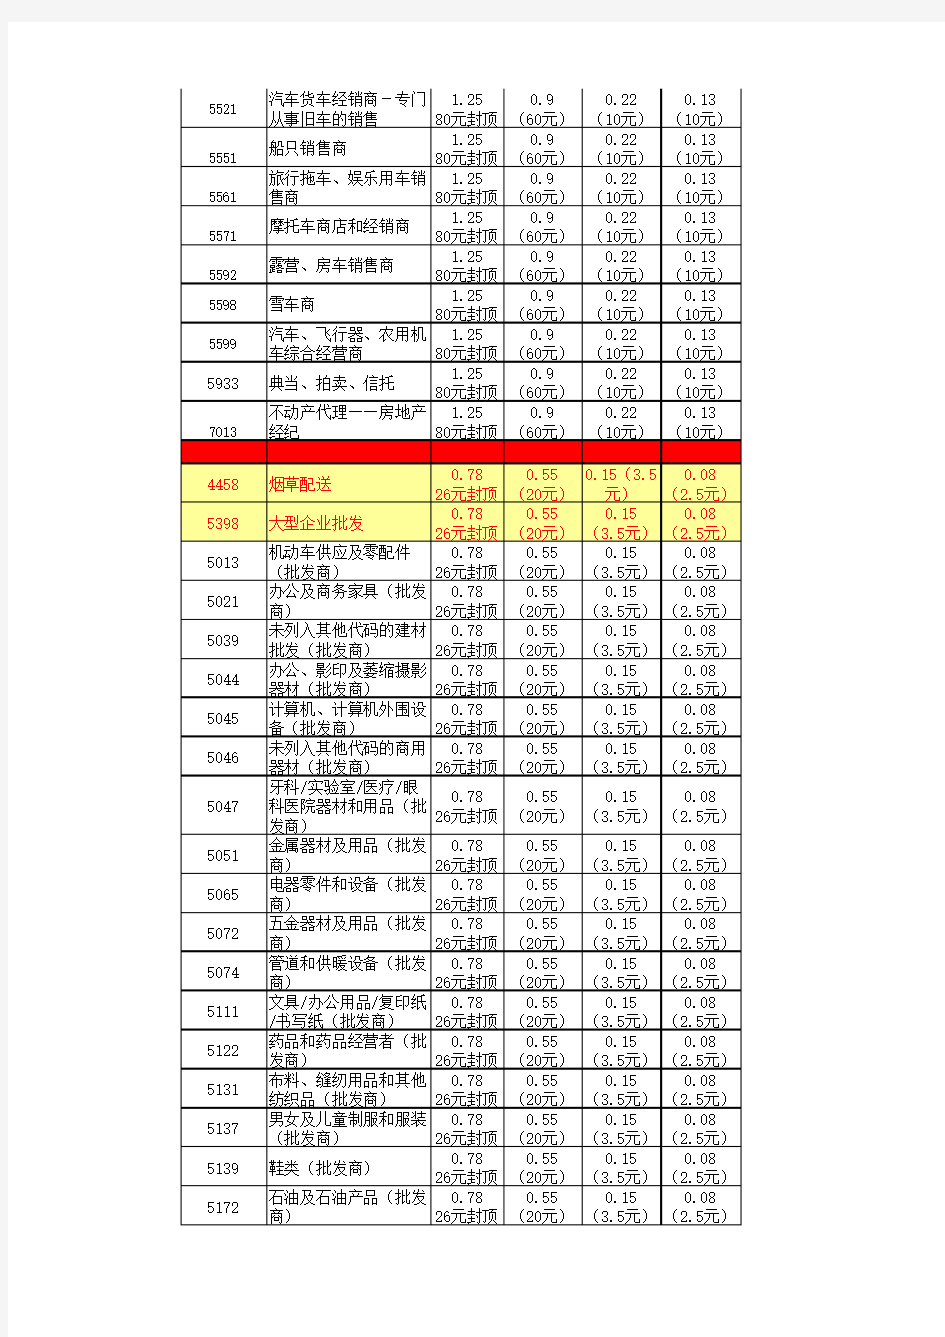 2017年最新中国银联MCC费率表